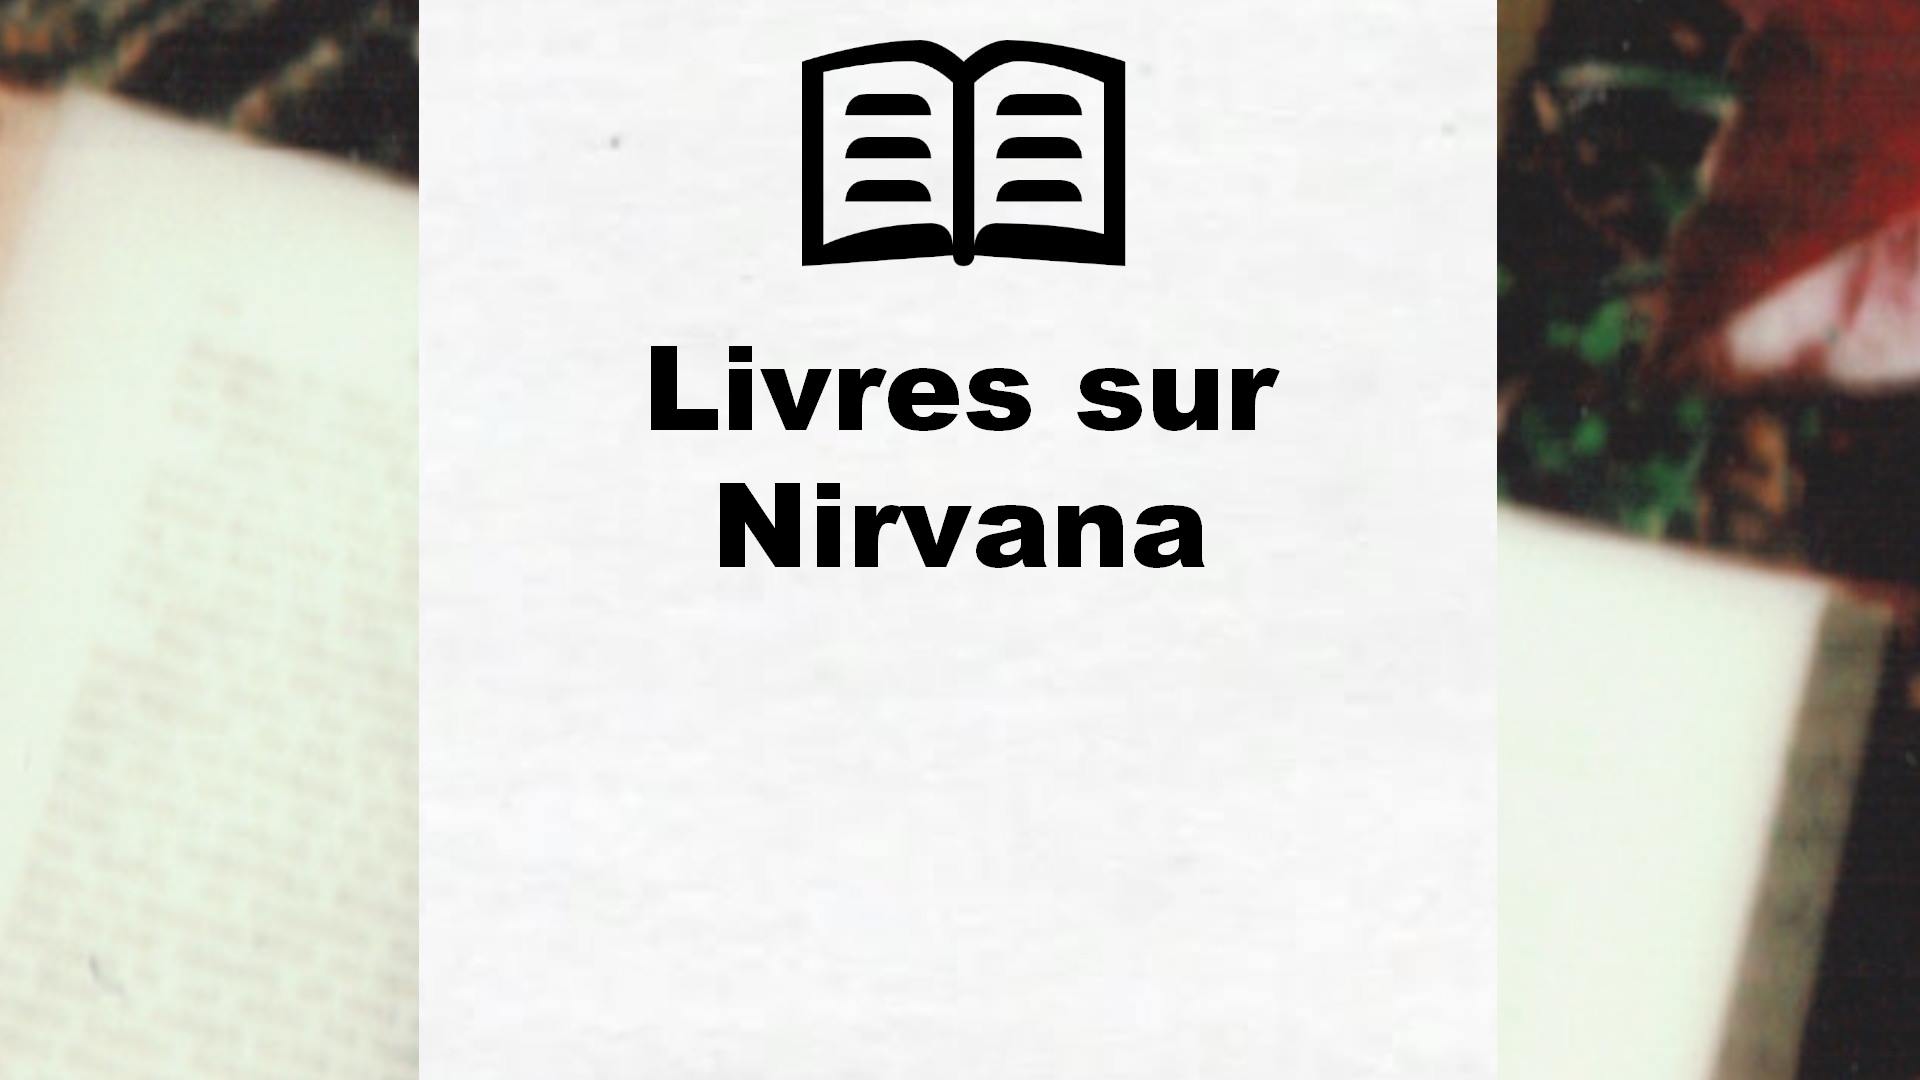 Livres sur Nirvana